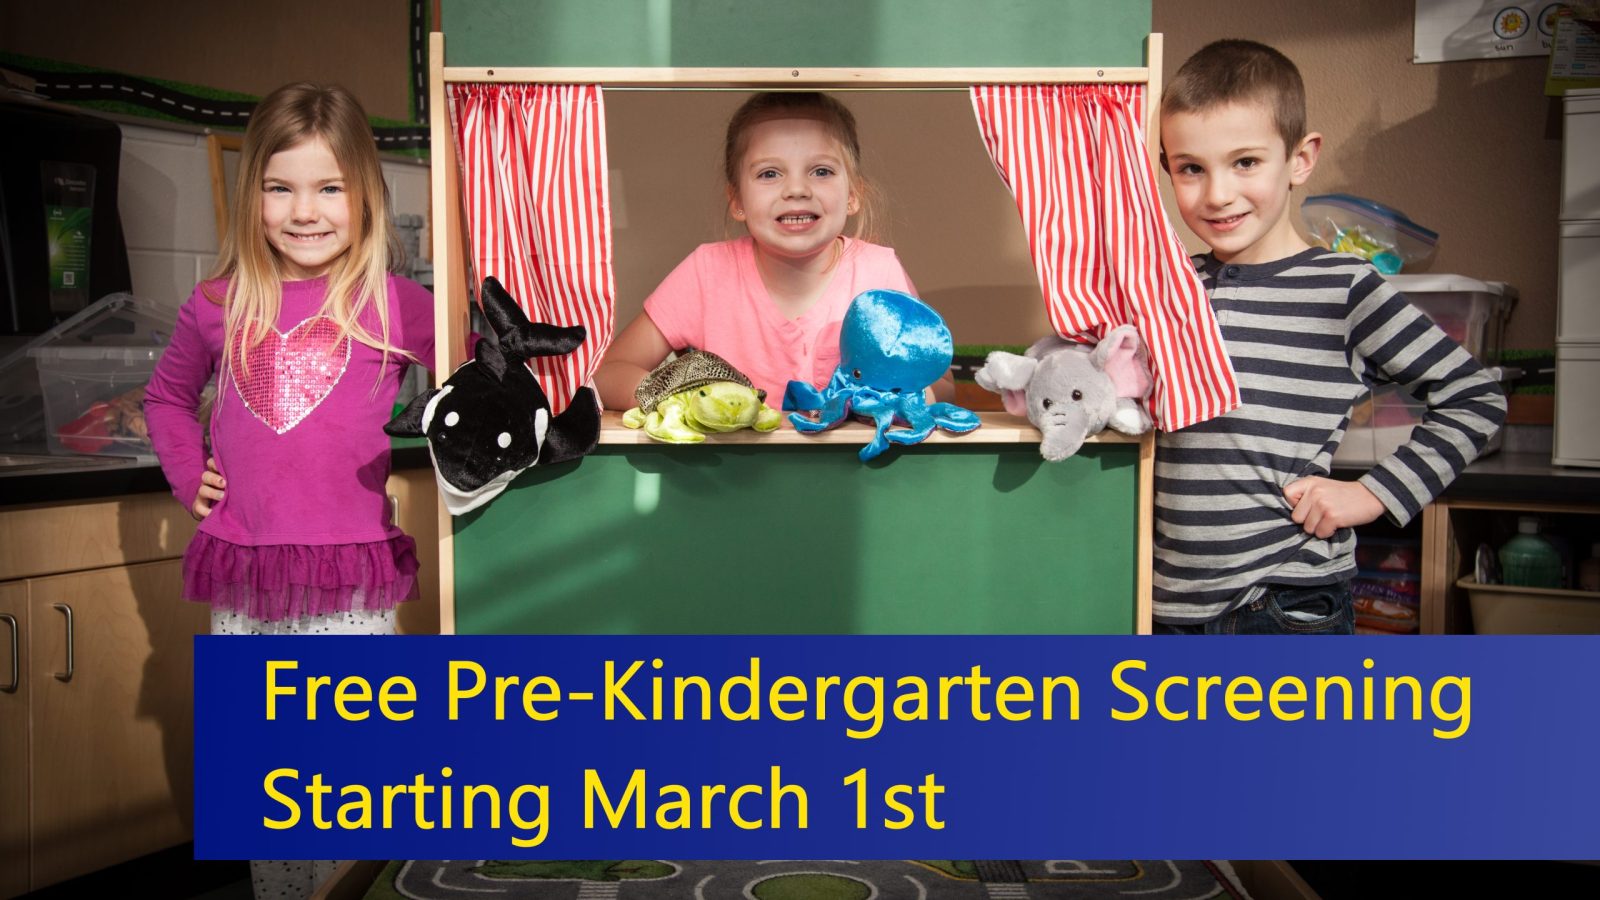 Pre-Kindergarten screening opens March 1, 2022